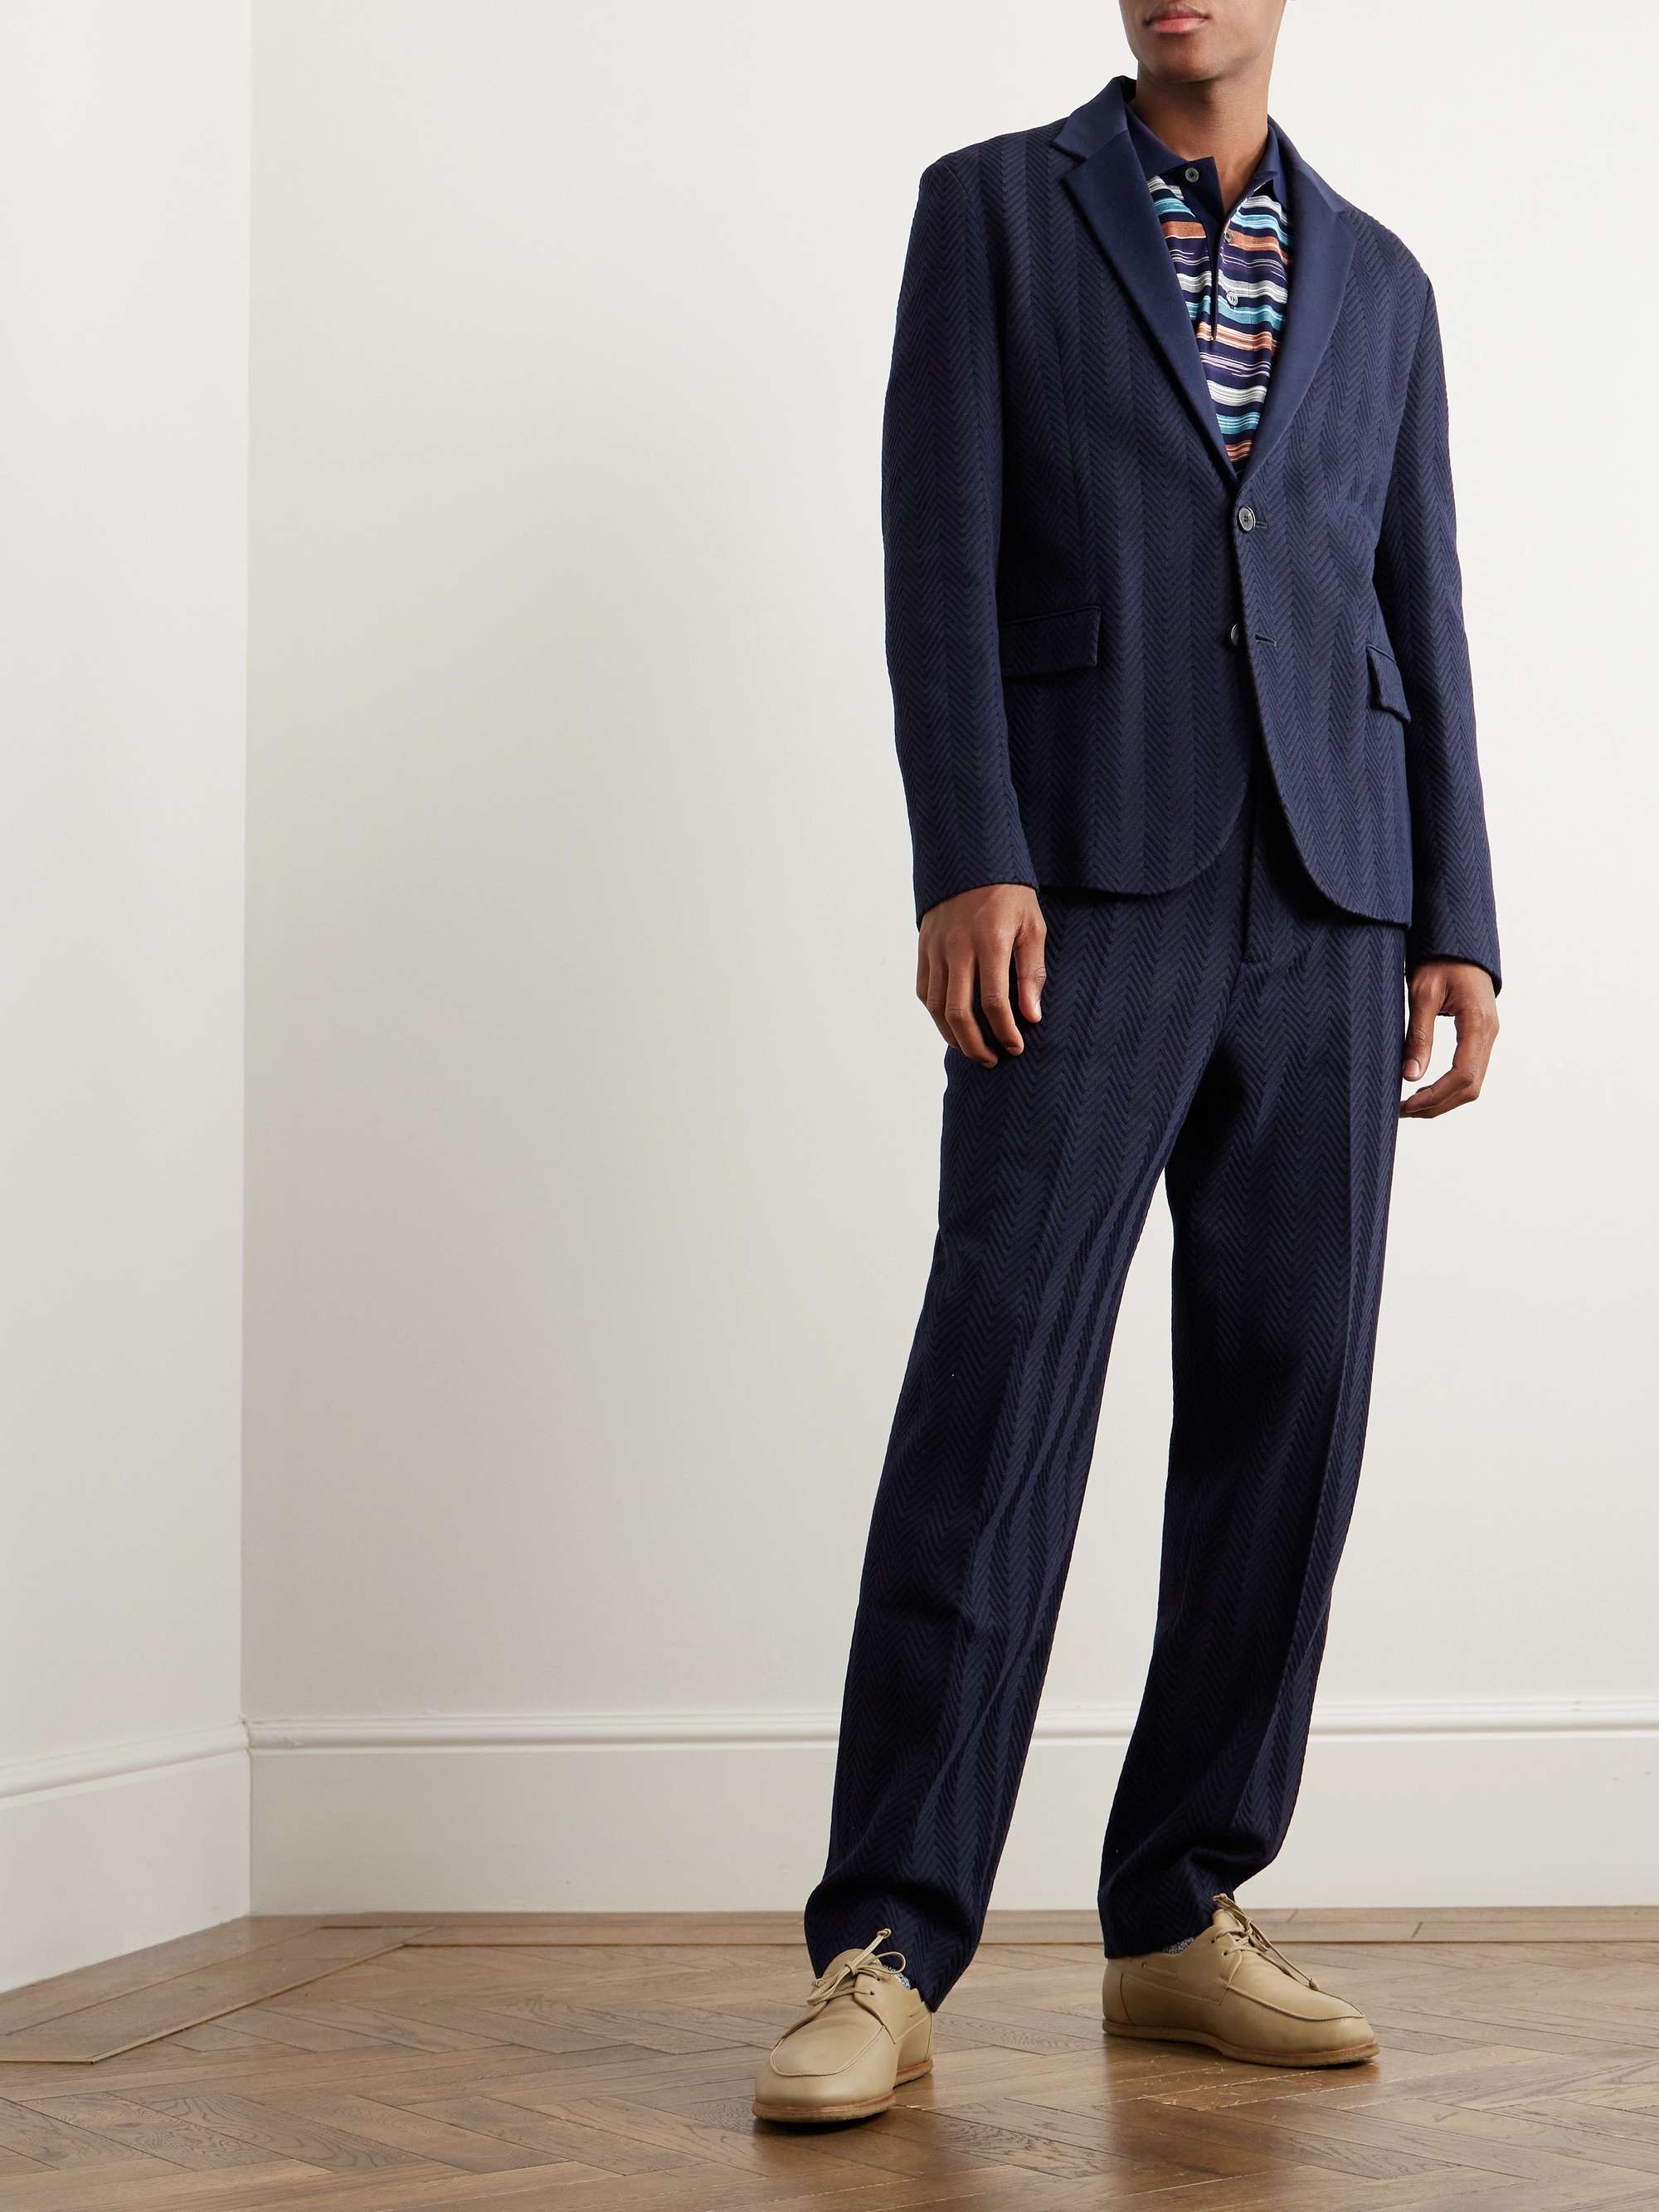 MISSONI Zigzag Cotton-Blend Suit MR Men for Jacquard Jacket | PORTER